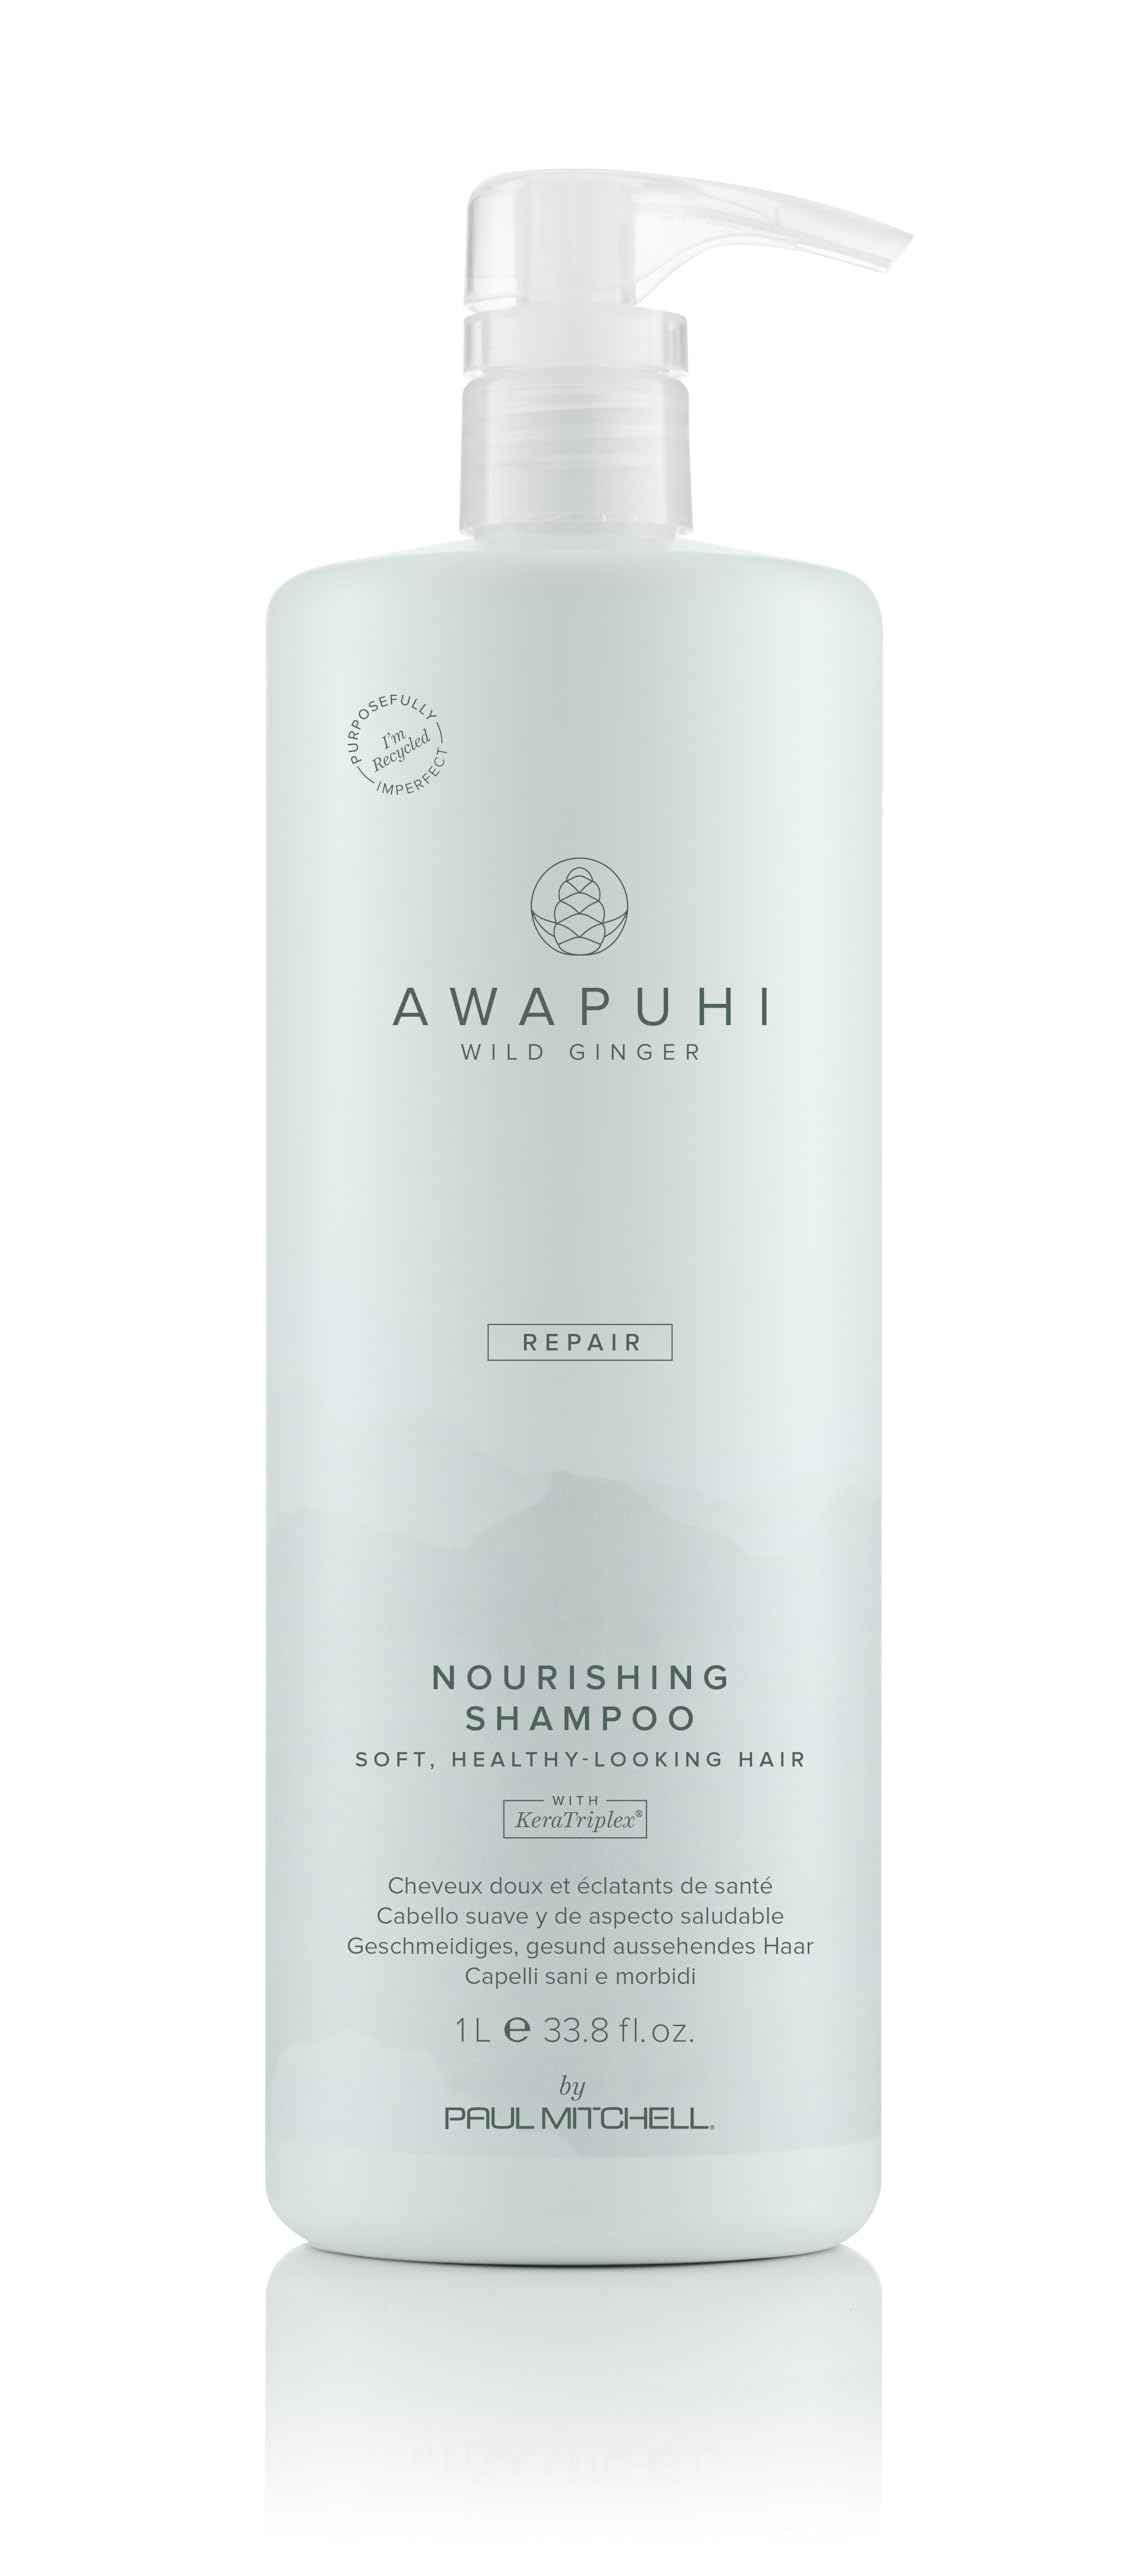 Paul Mitchell Awapuhi Wild Ginger Moisturizing Lather Shampoo - Feuchtigkeits-Shampoo für trockenes, strapaziertes Haar, Haarpflege in Salon-Qualität, 1000 ml